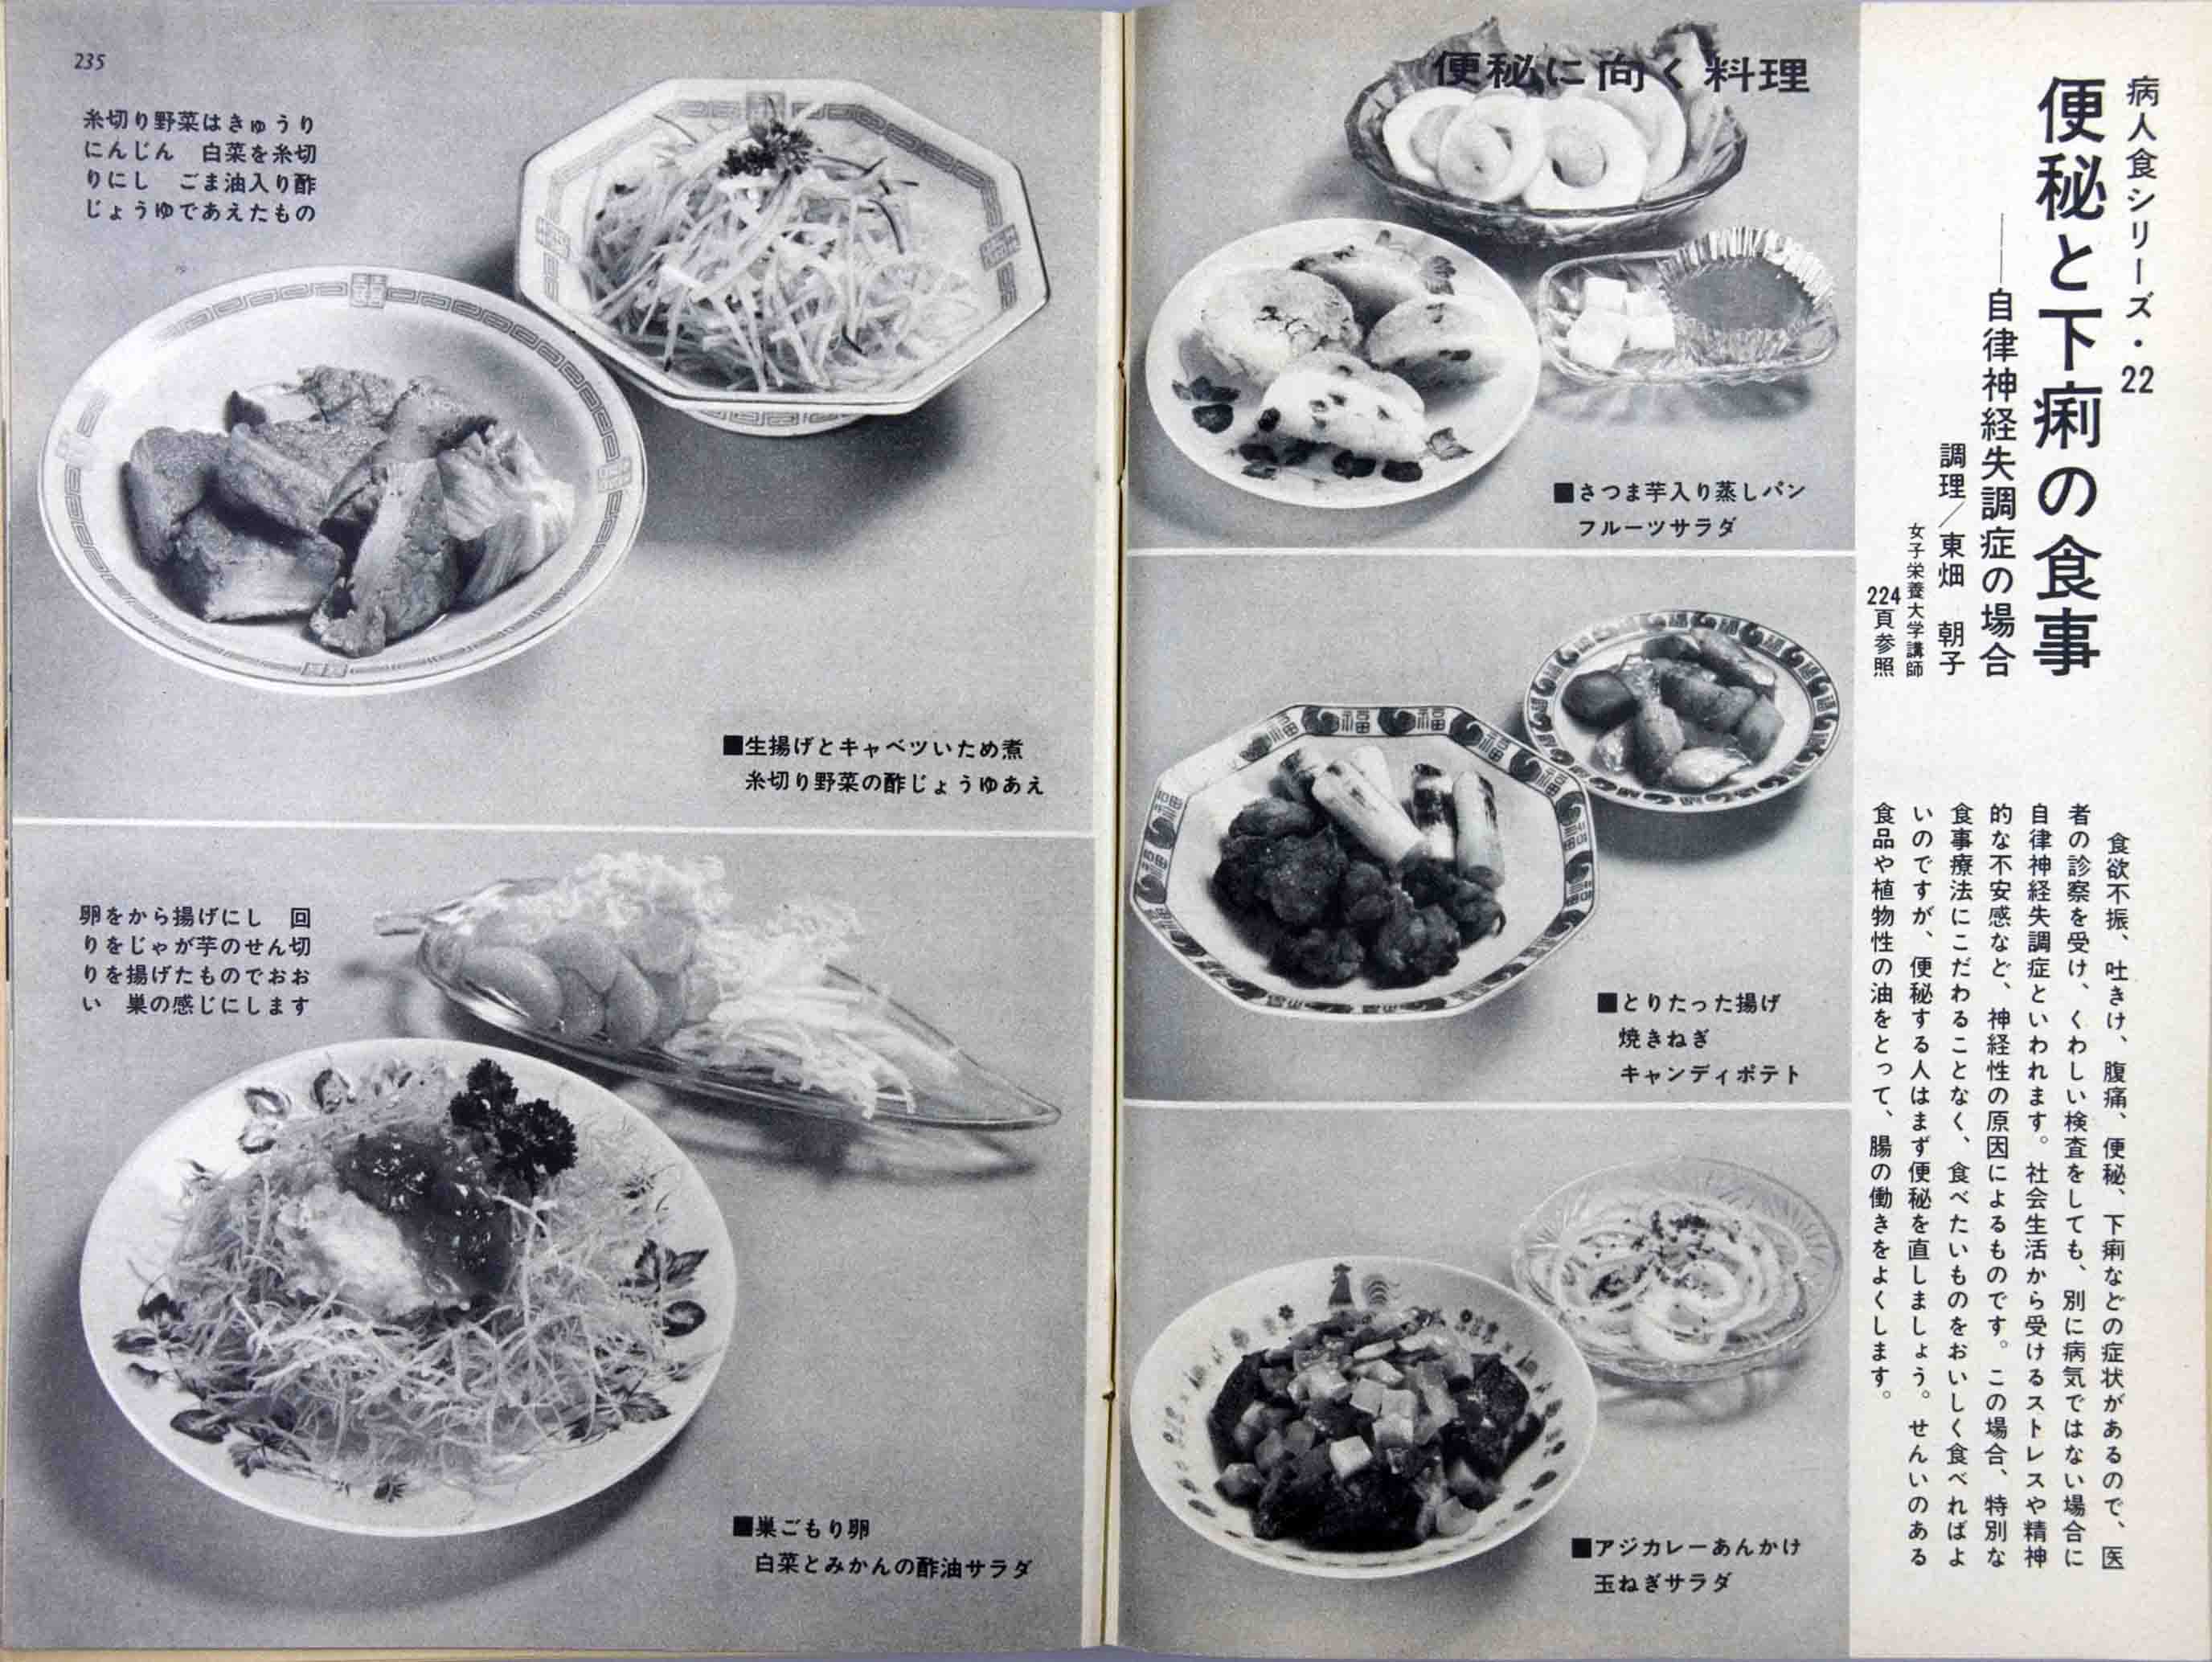 栄養と料理デジタルアーカイブス 昭和40年 1965年 10月第31巻第10号